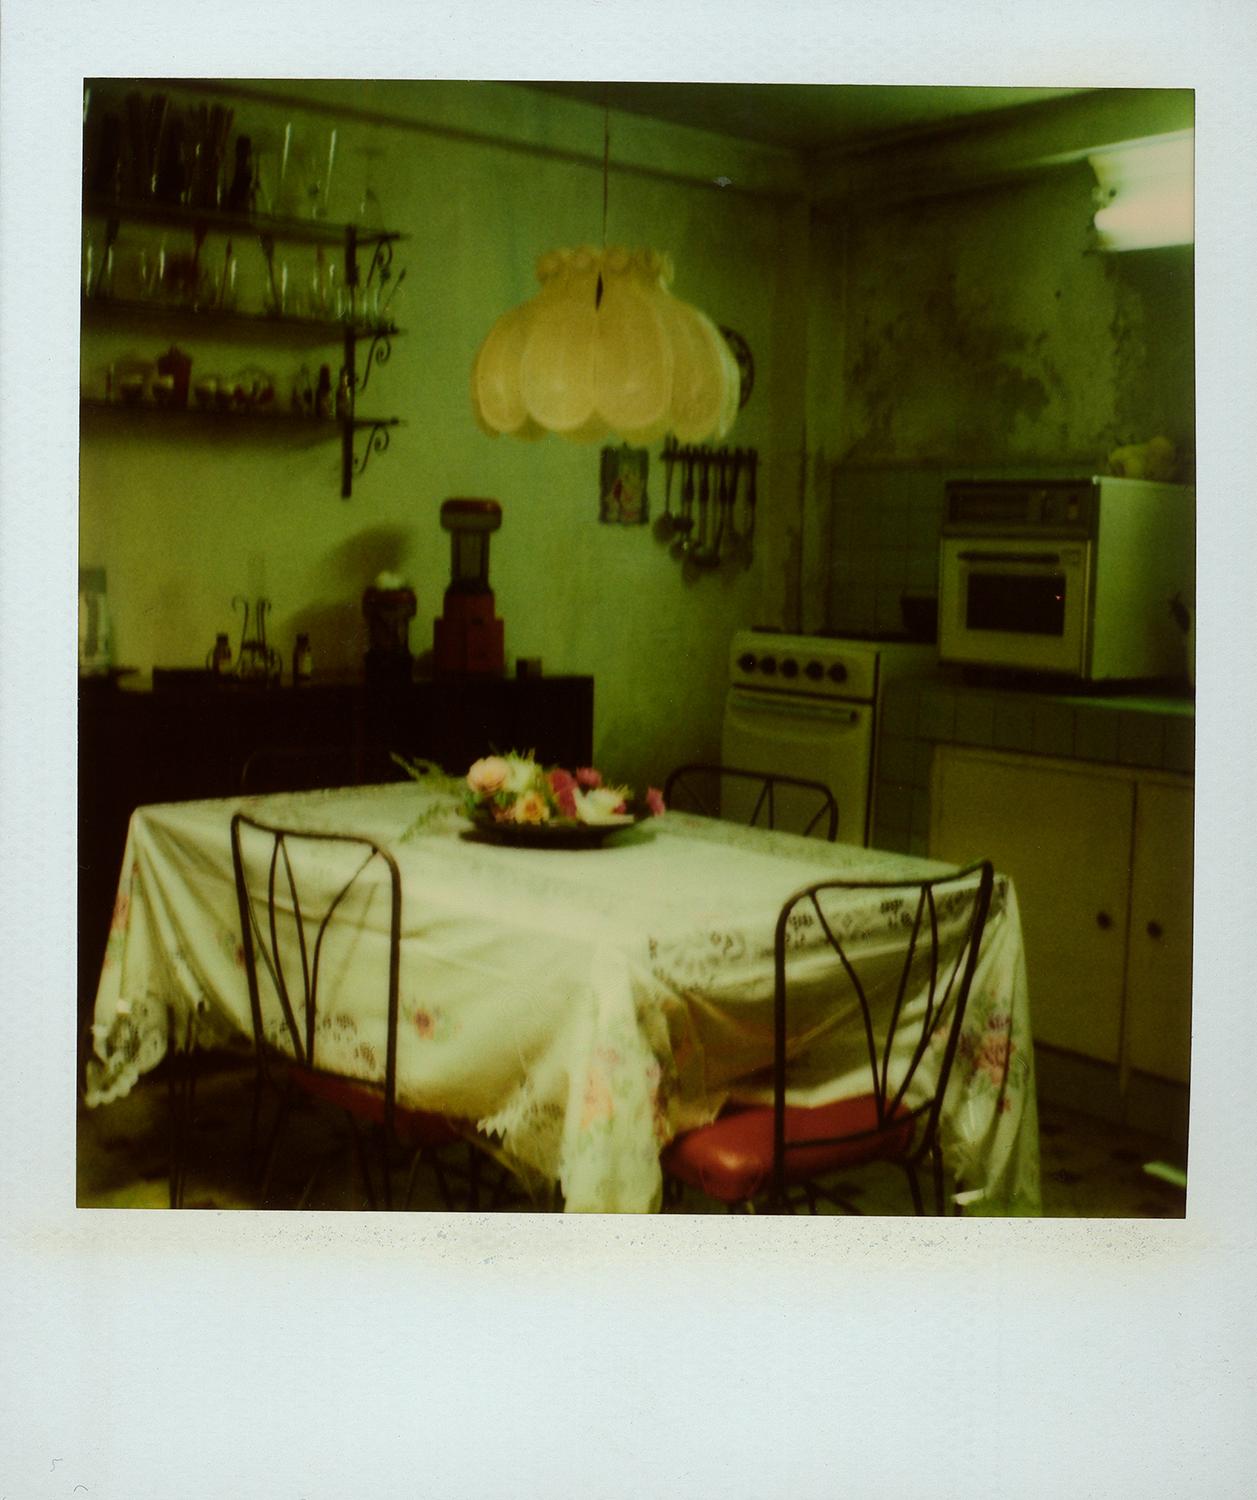 "Eddie's Kitchen", Cuba, 1994